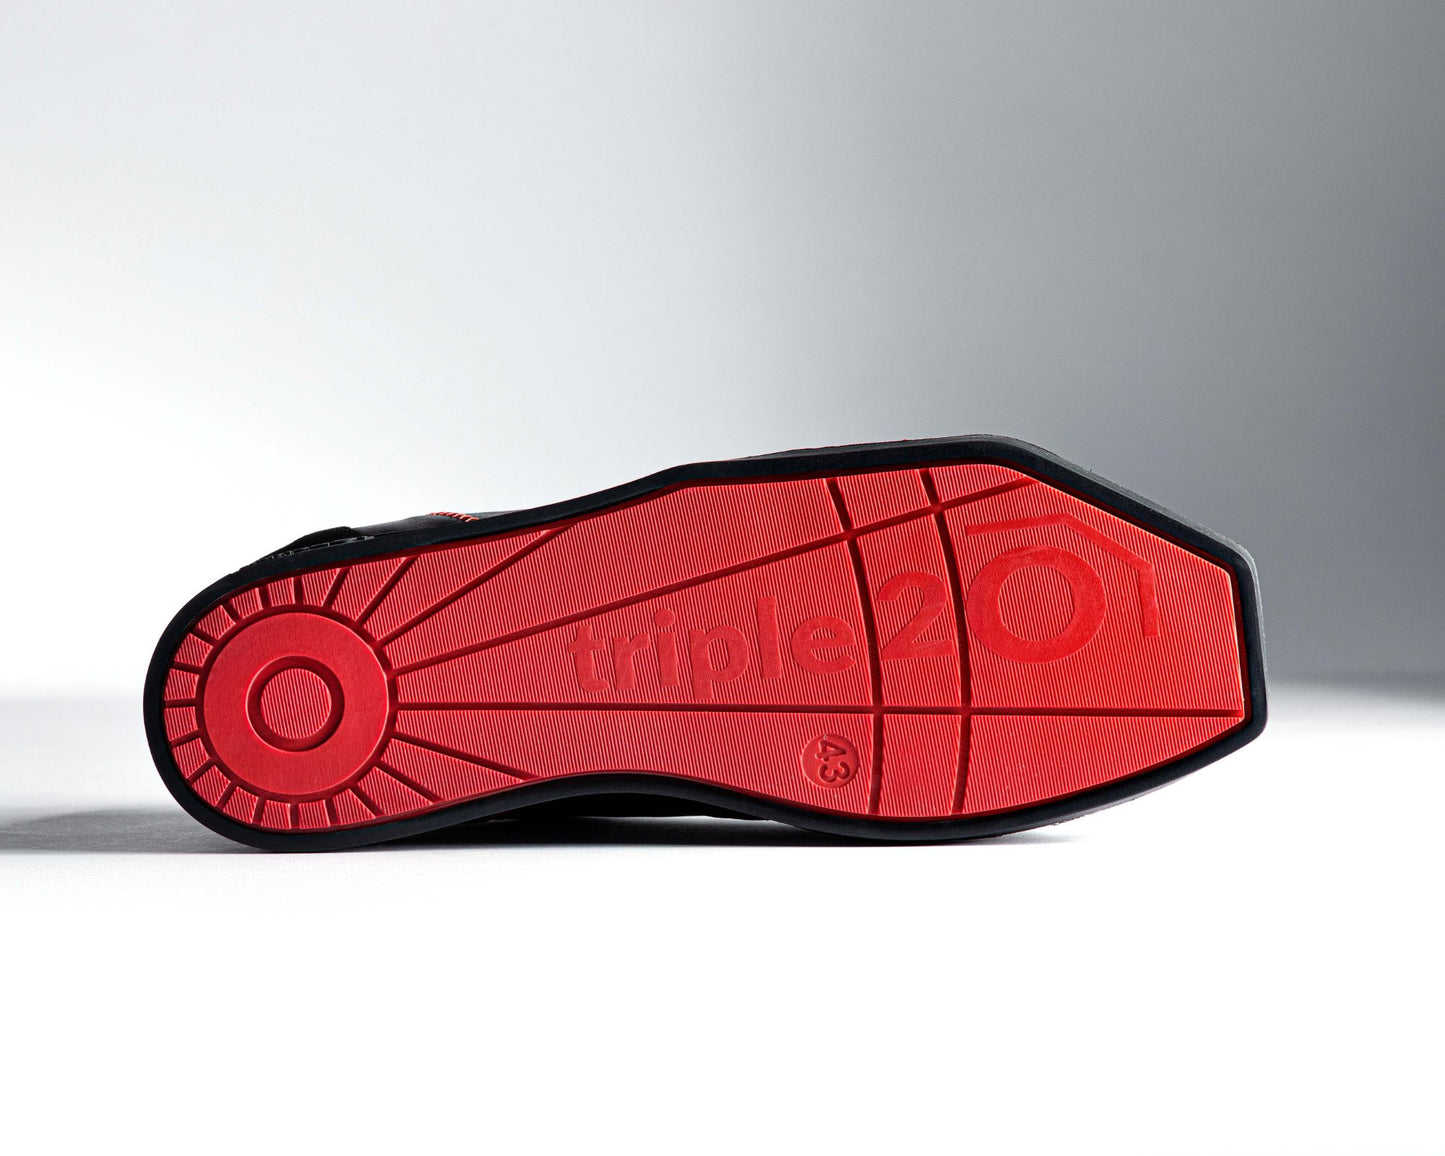 Ansicht einer leuchtend roten Laufsohle eines triple20 Dartschuhs. Durch den schwarzen Rahmen wird die Speziallaufsohle exakt umrissen, sodass die Winkelform deutlich zur Geltung kommt. Auch fällt auf, mit wieviel Liebe zum Detail die Unterseite der Sohle designt wurde. Wem ein ausschließlich schwarzer Schuh zu langweilig ist, wird dieses Modell lieben.